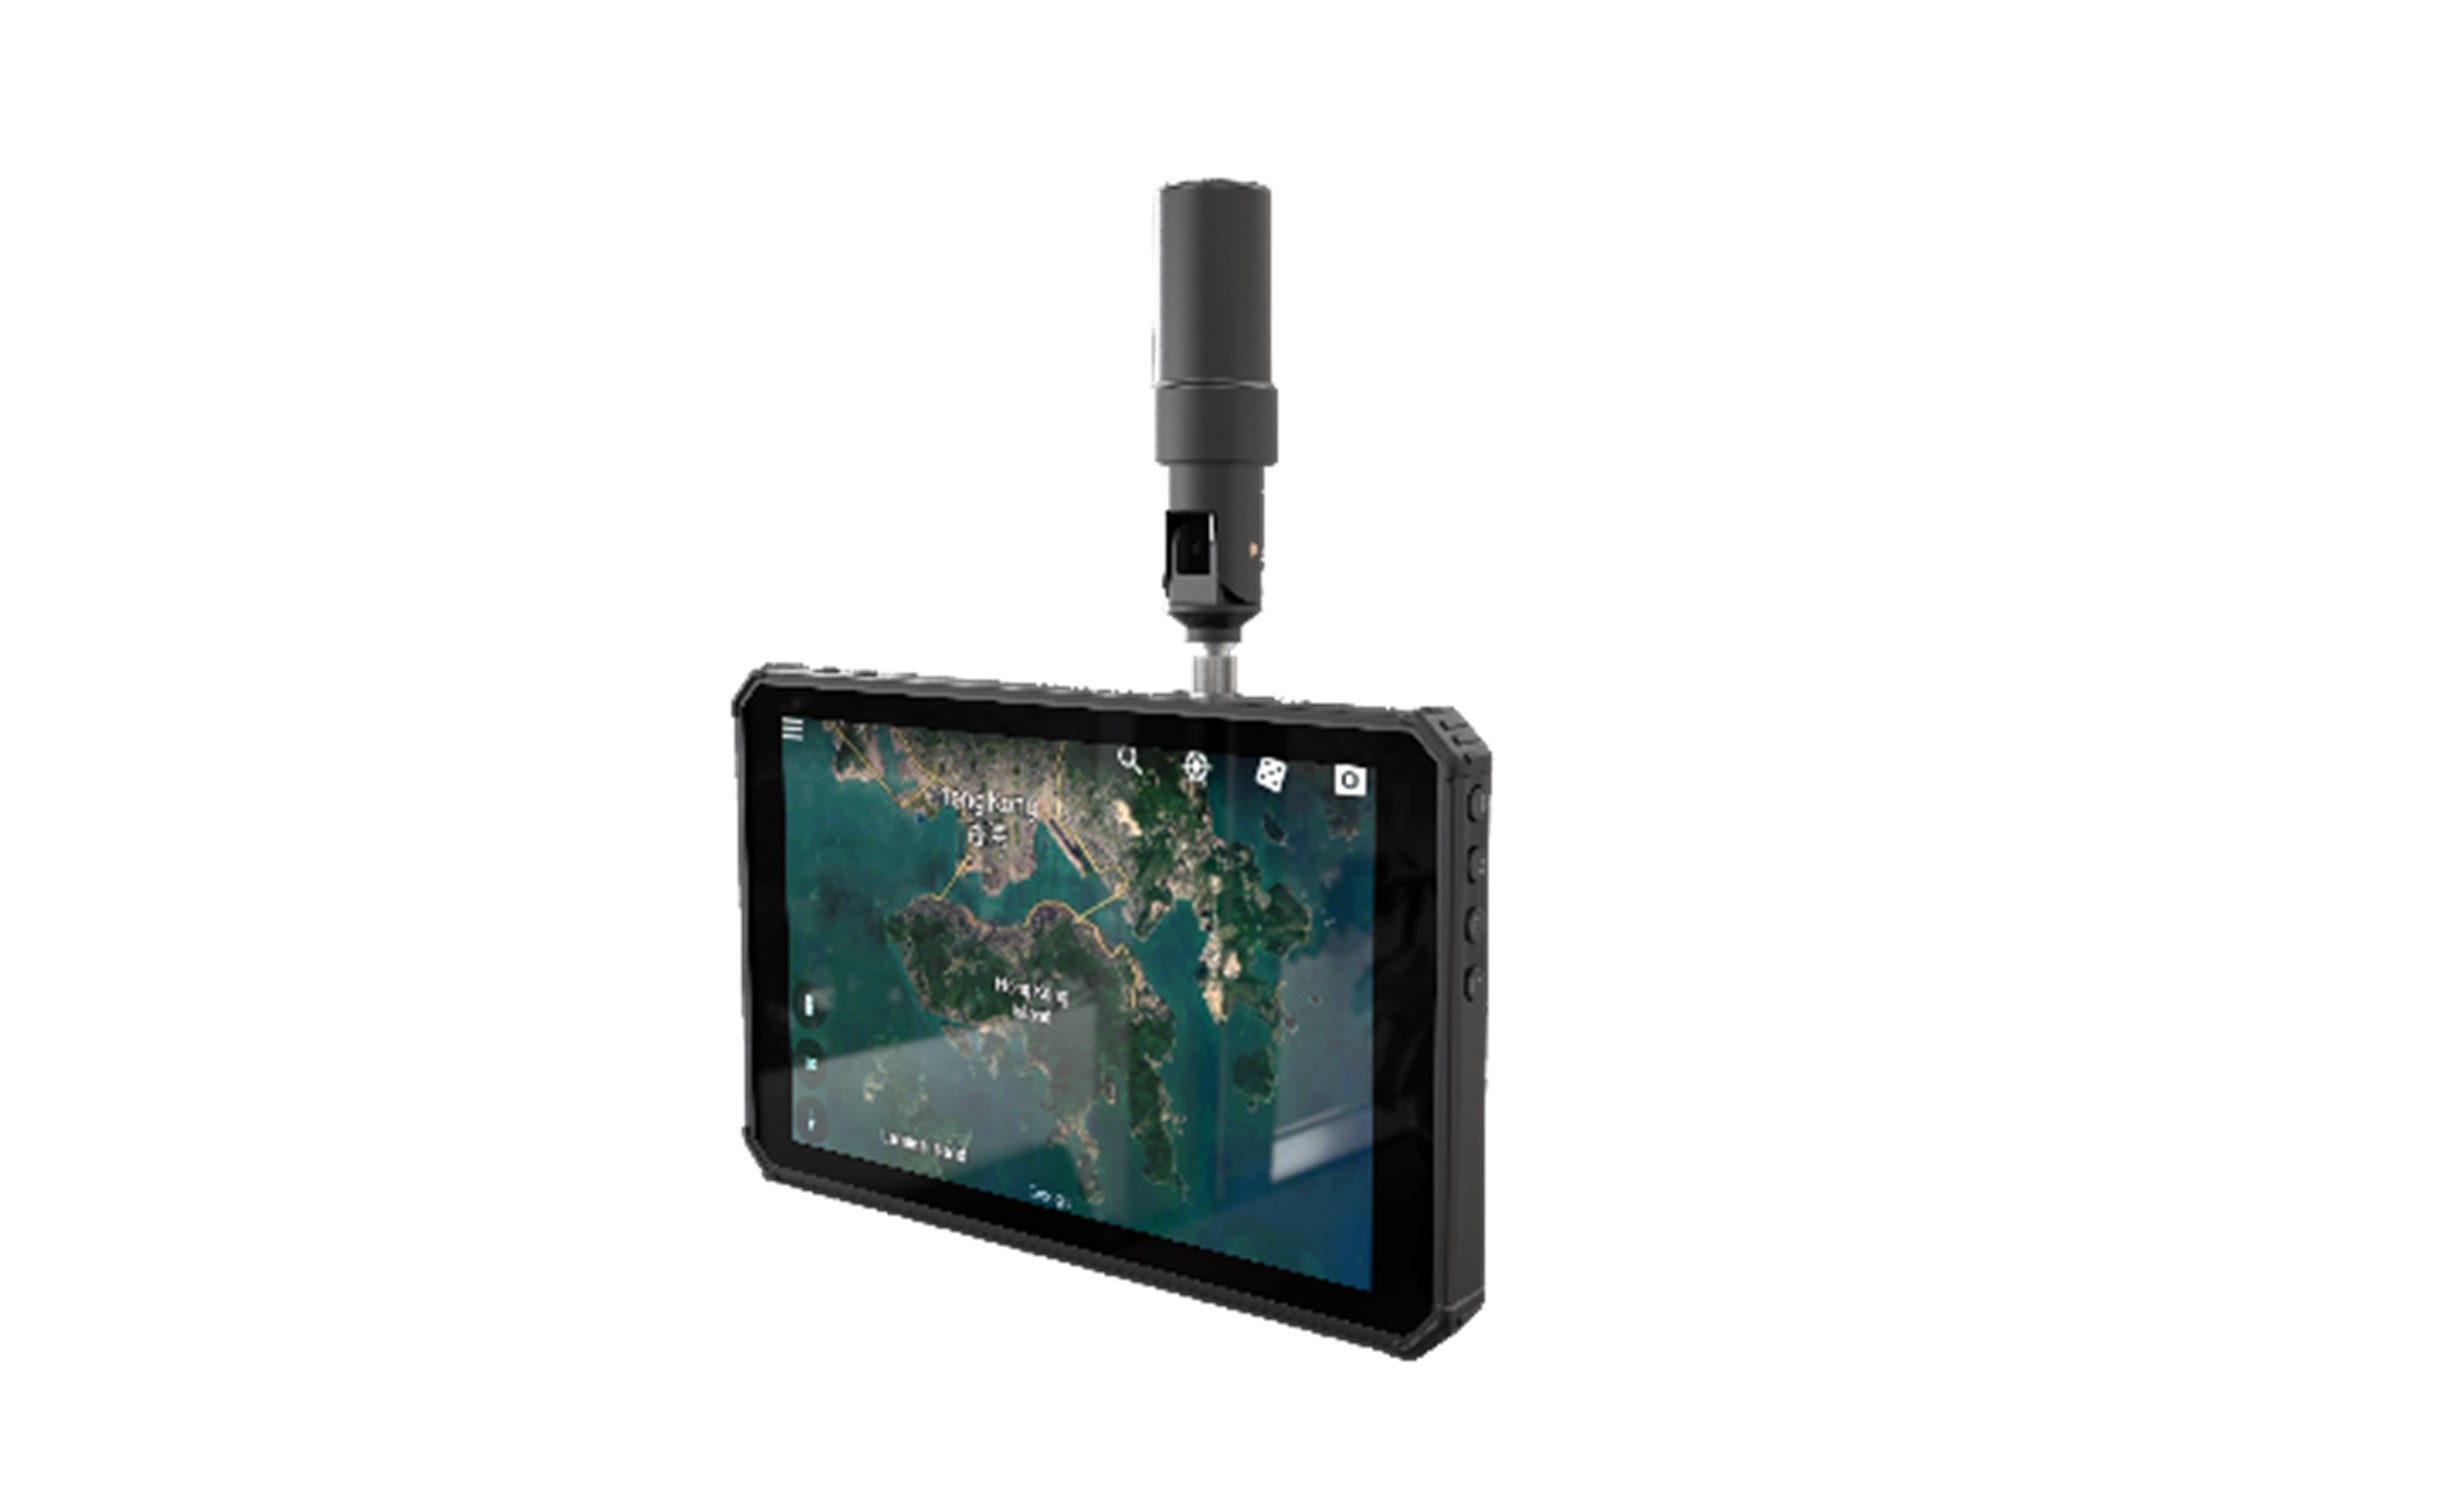 厘米级精准度GNSS定位的工业级平板计算机- Nilamtec T3F